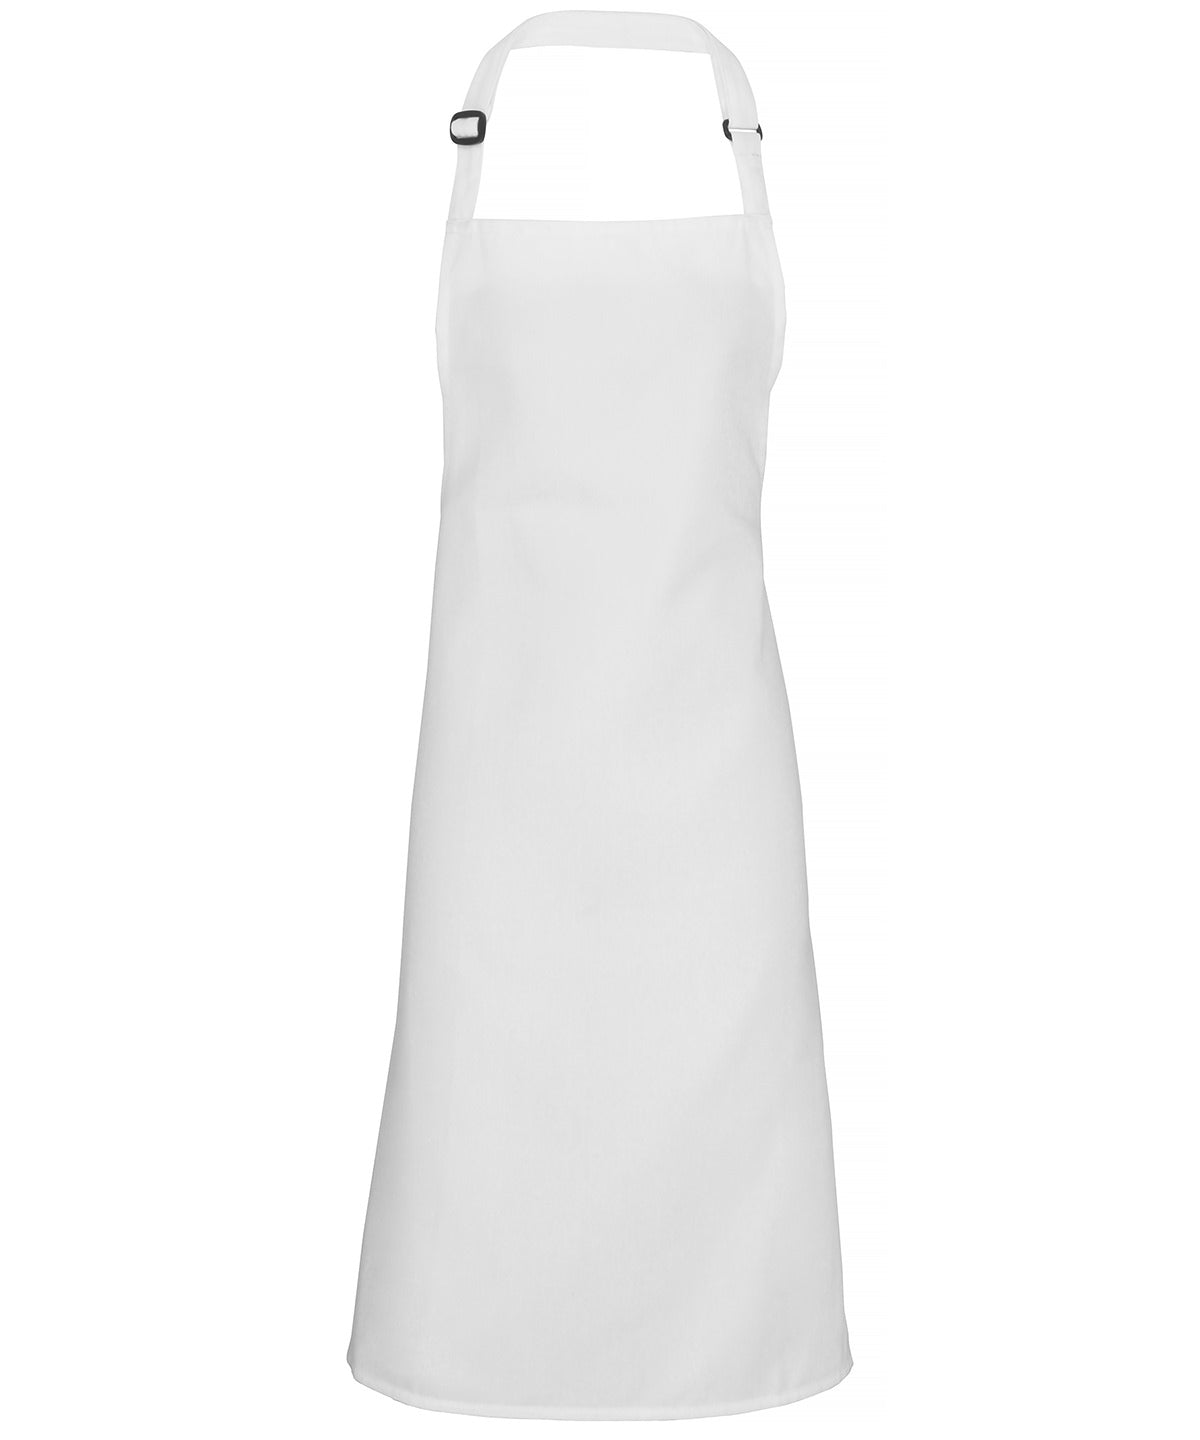 Premier 100% Polyester bib apron